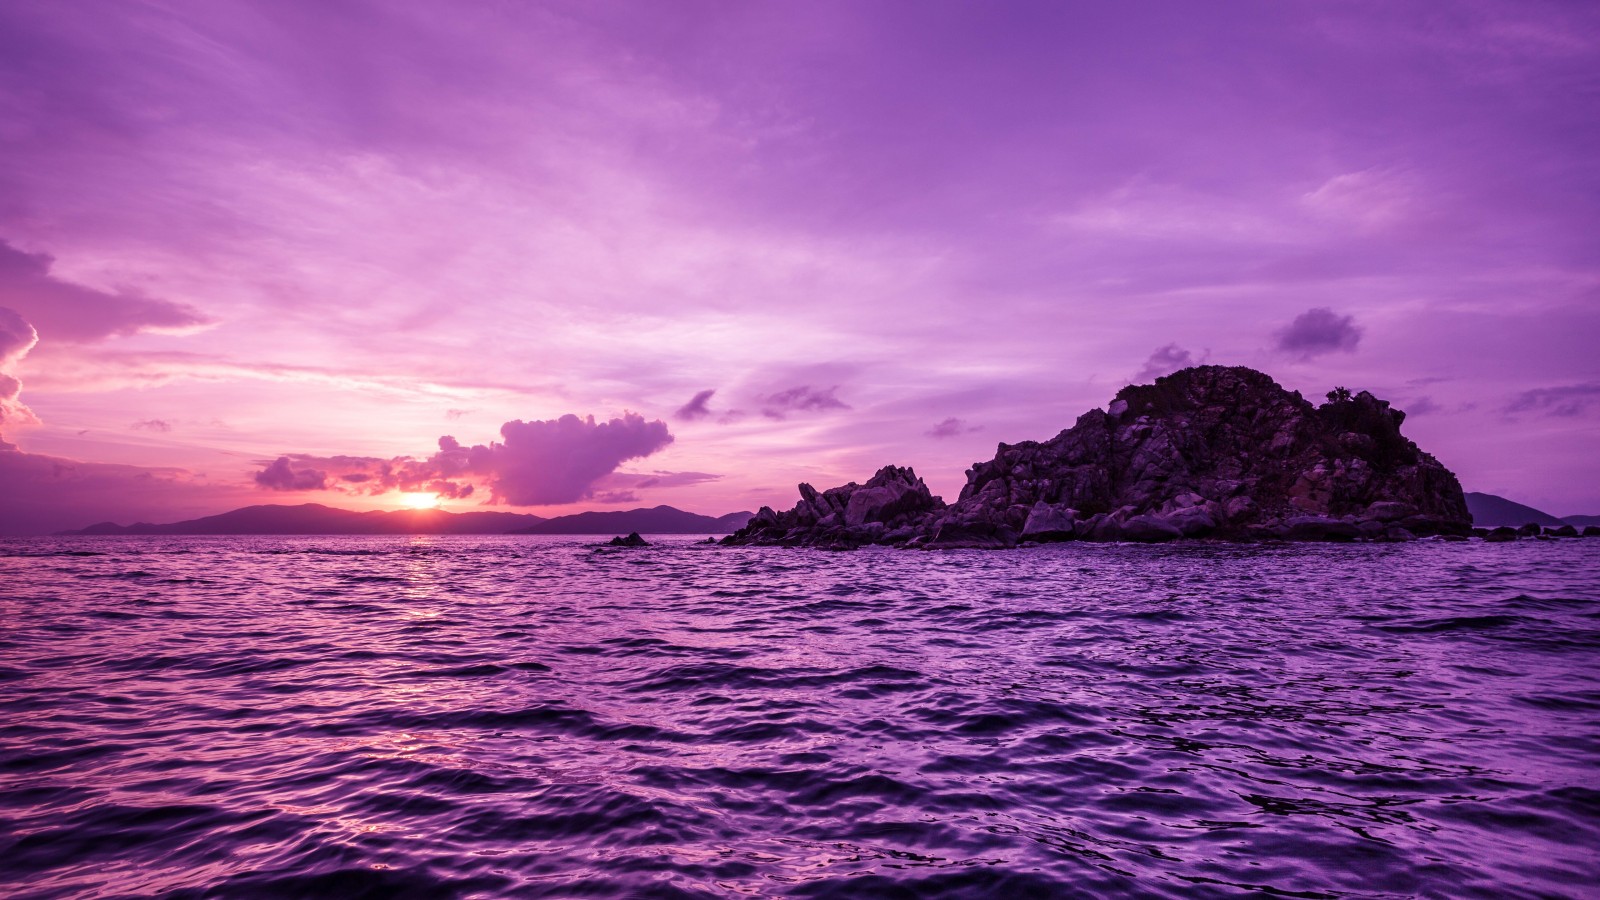 Pelican Island Sunset, British Virgin Islands Wallpaper for Desktop 1600x900